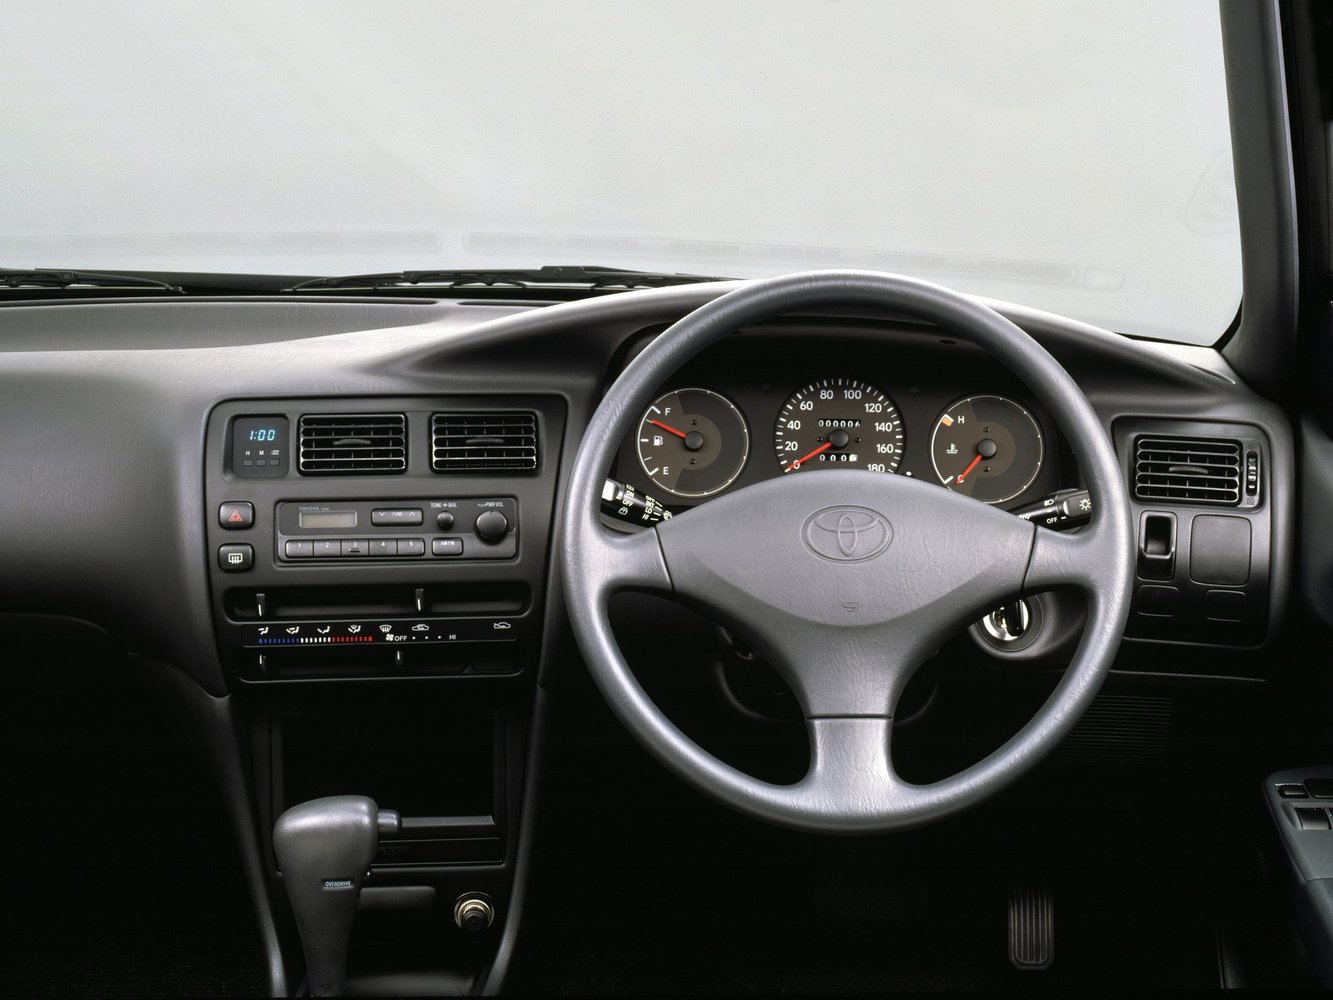 универсал Toyota Corolla 1991 - 1997г выпуска модификация 1.3 AT (88 л.с.)